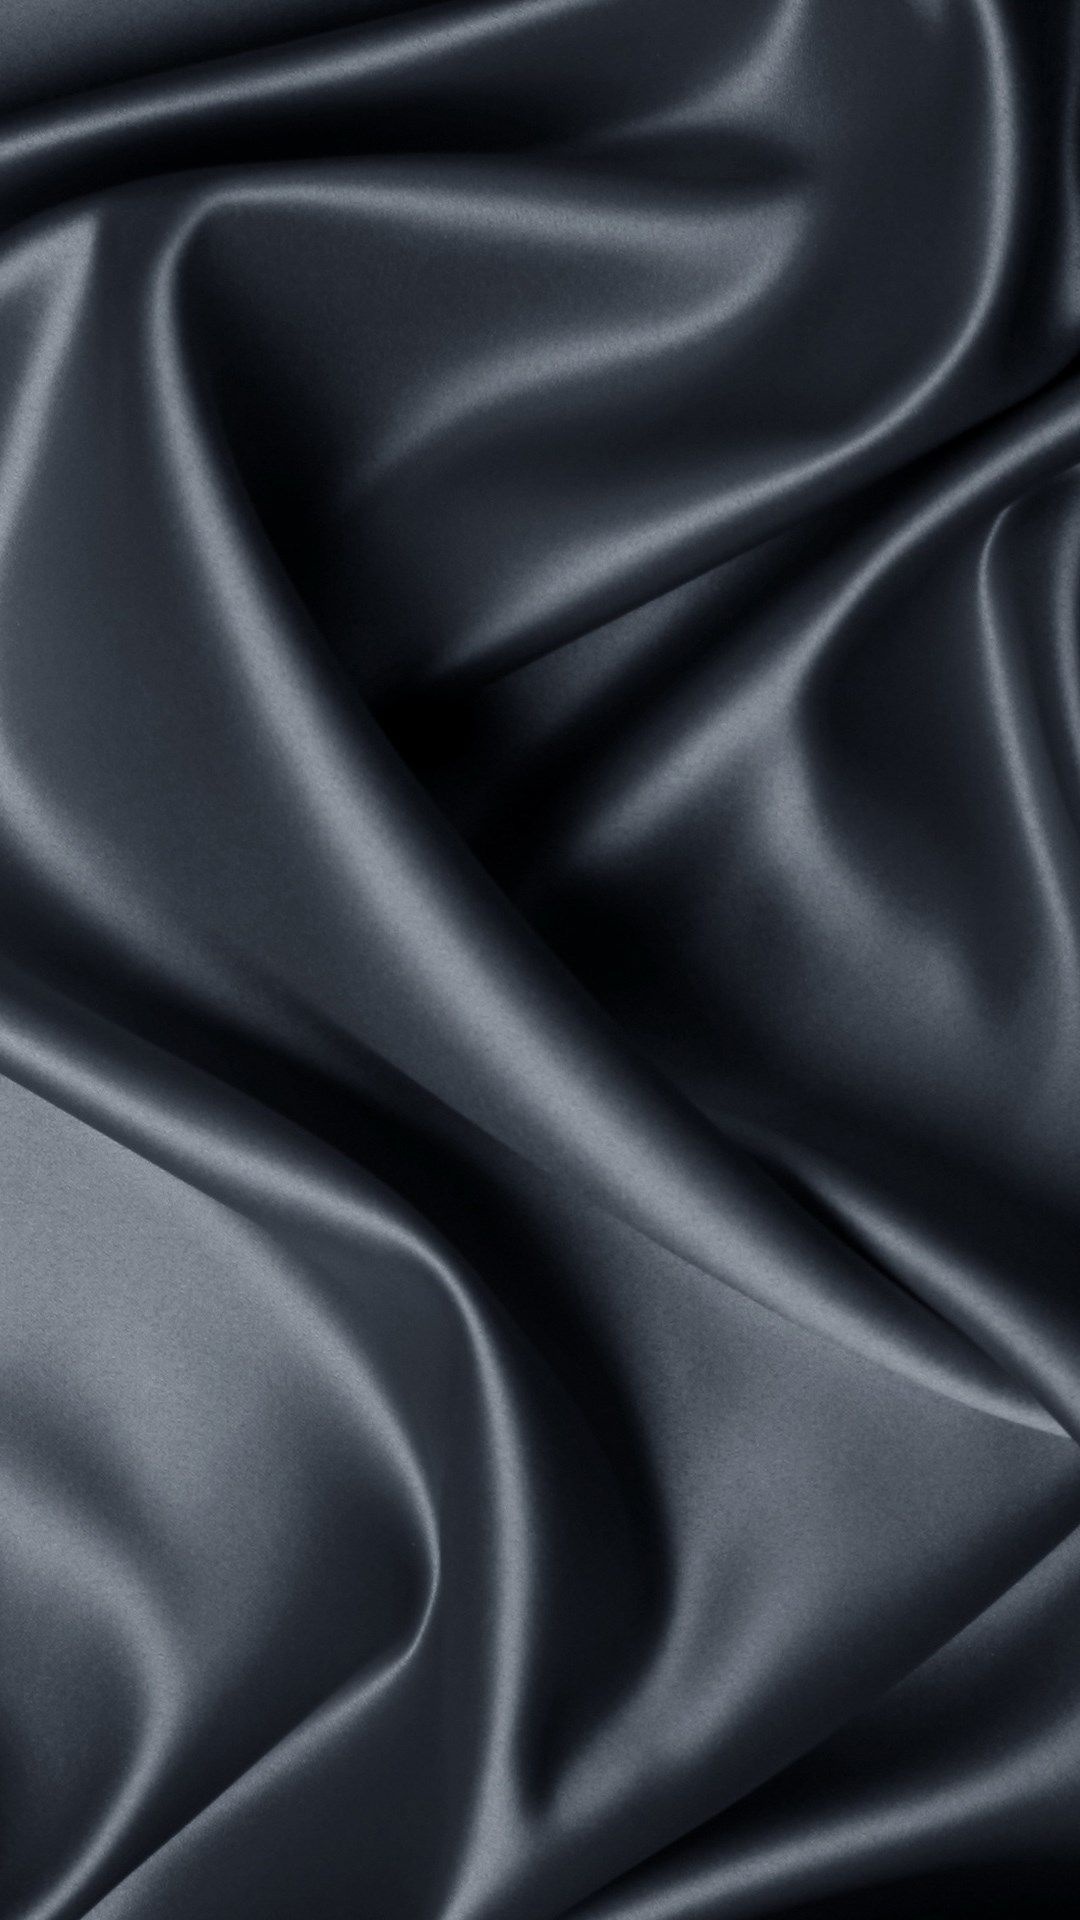 Black silk wallpaper, Minimalist, Elegant, HD, 1080x1920 Full HD Phone